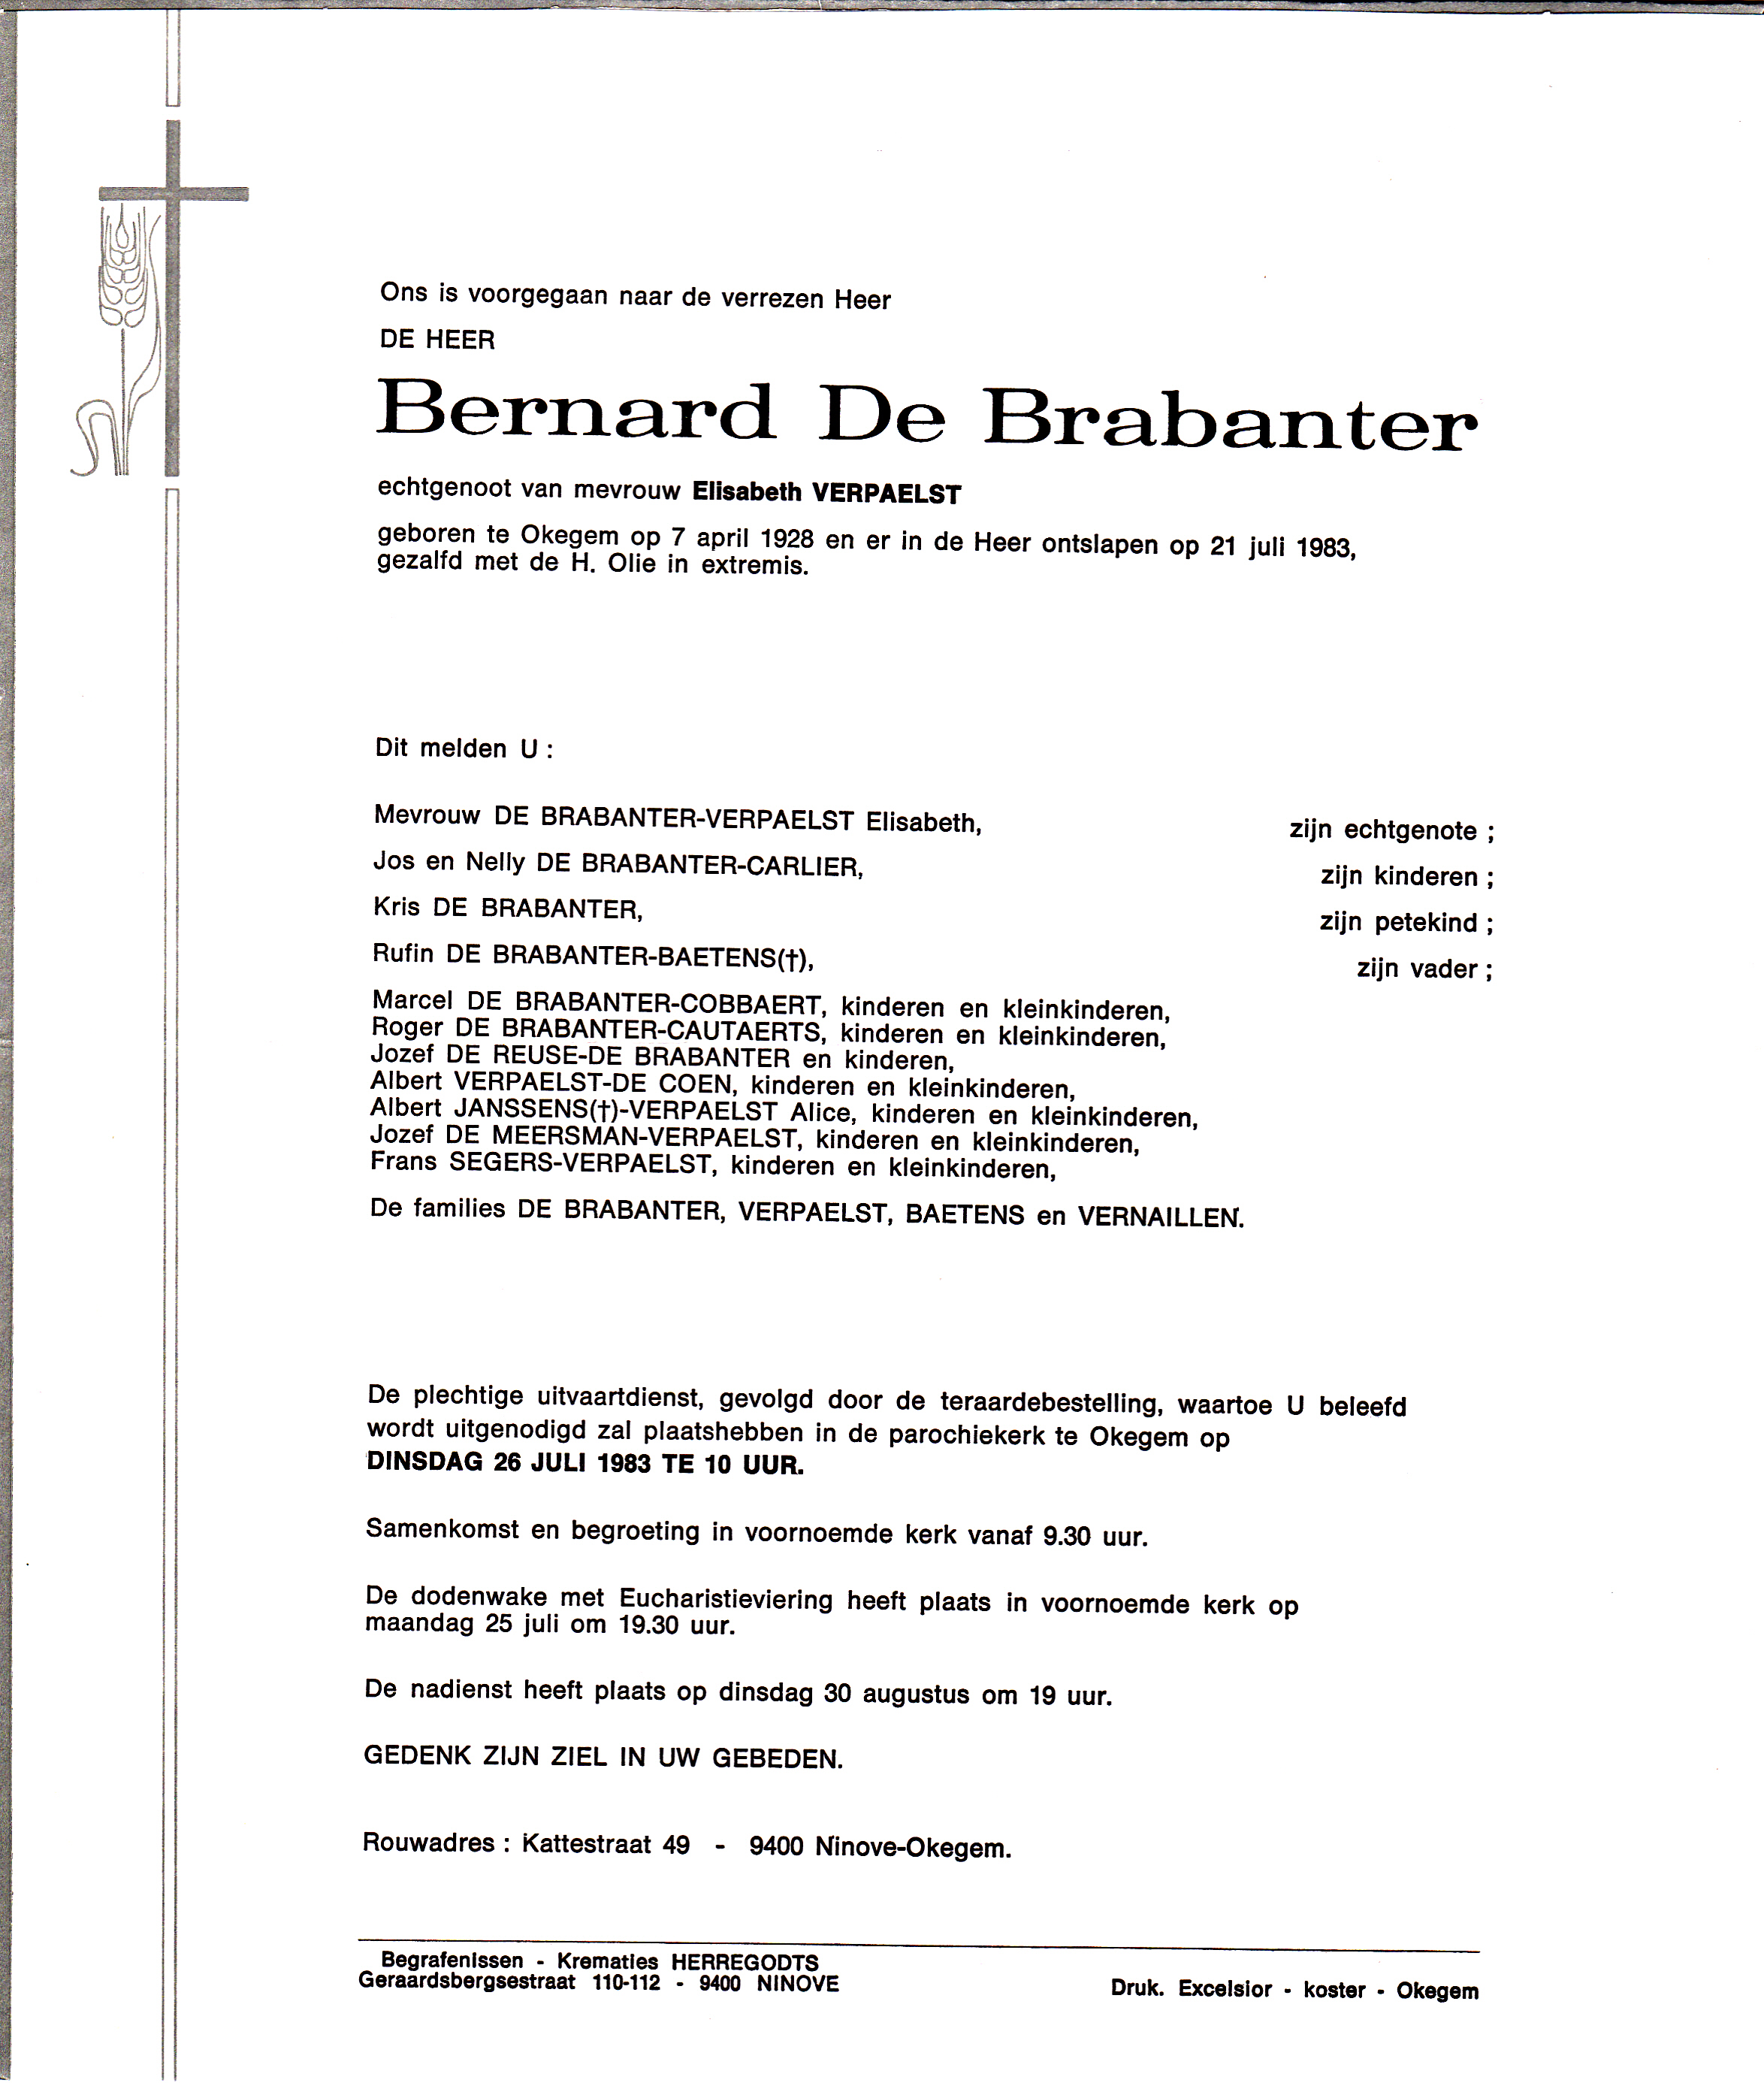 De Brabanter Bernard 